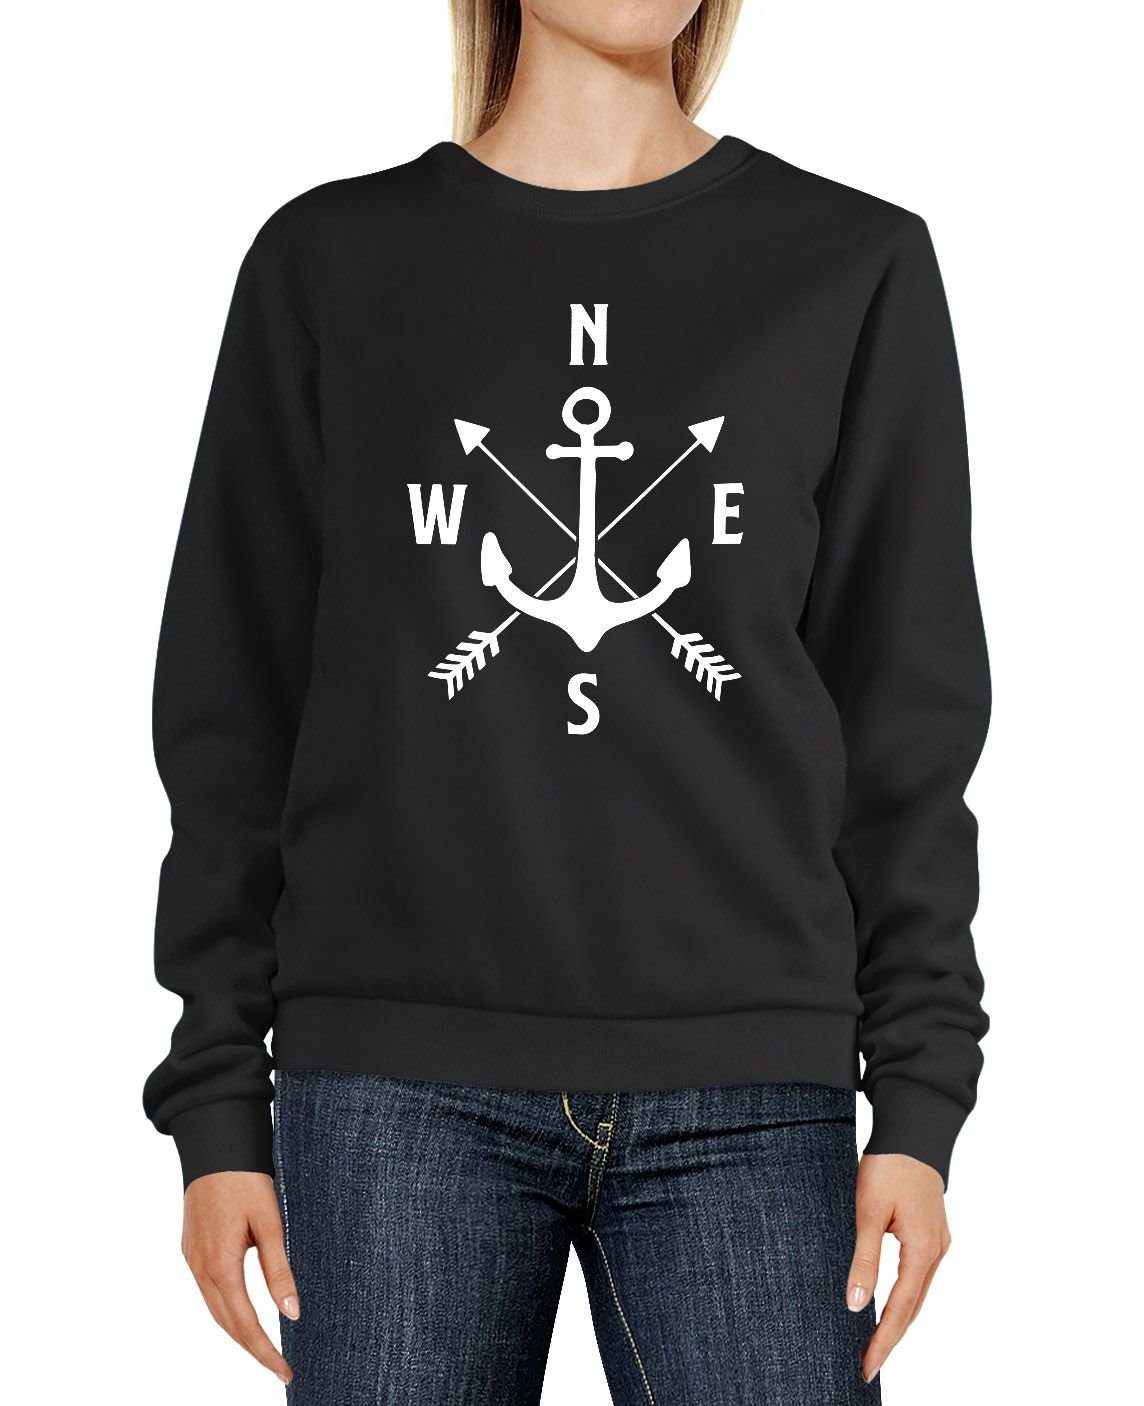 Pfeile schwarz Kompass Sweatshirt Rundhals-Pullover Sweater Anker Aufdruck Damen Motiv MoonWorks Sweatshirt Moonworks® Pulli